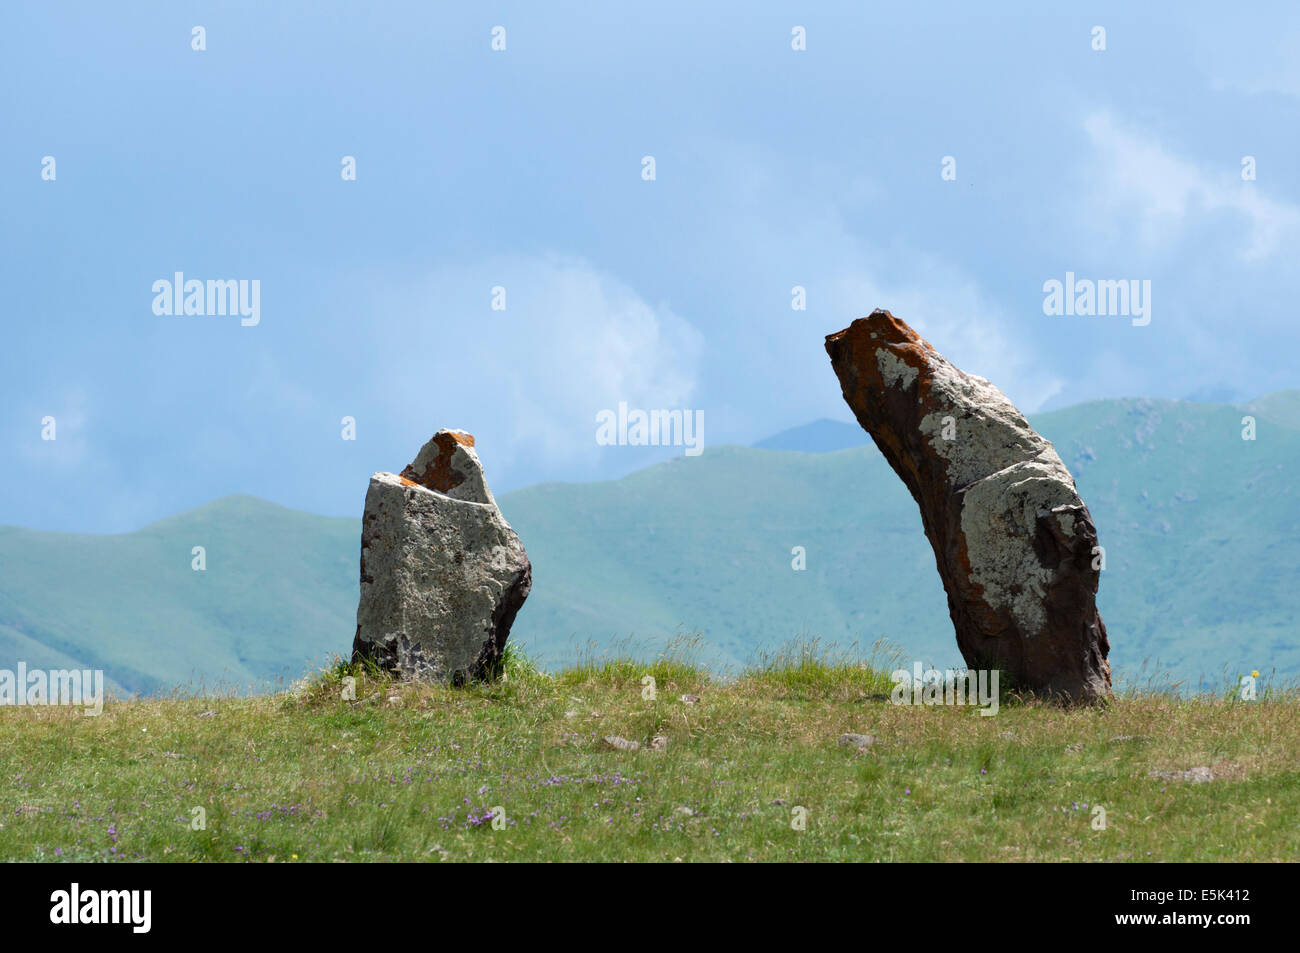 Zorats Karer (Karahunj) sitio arqueológico prehistórico, Armenia Foto de stock